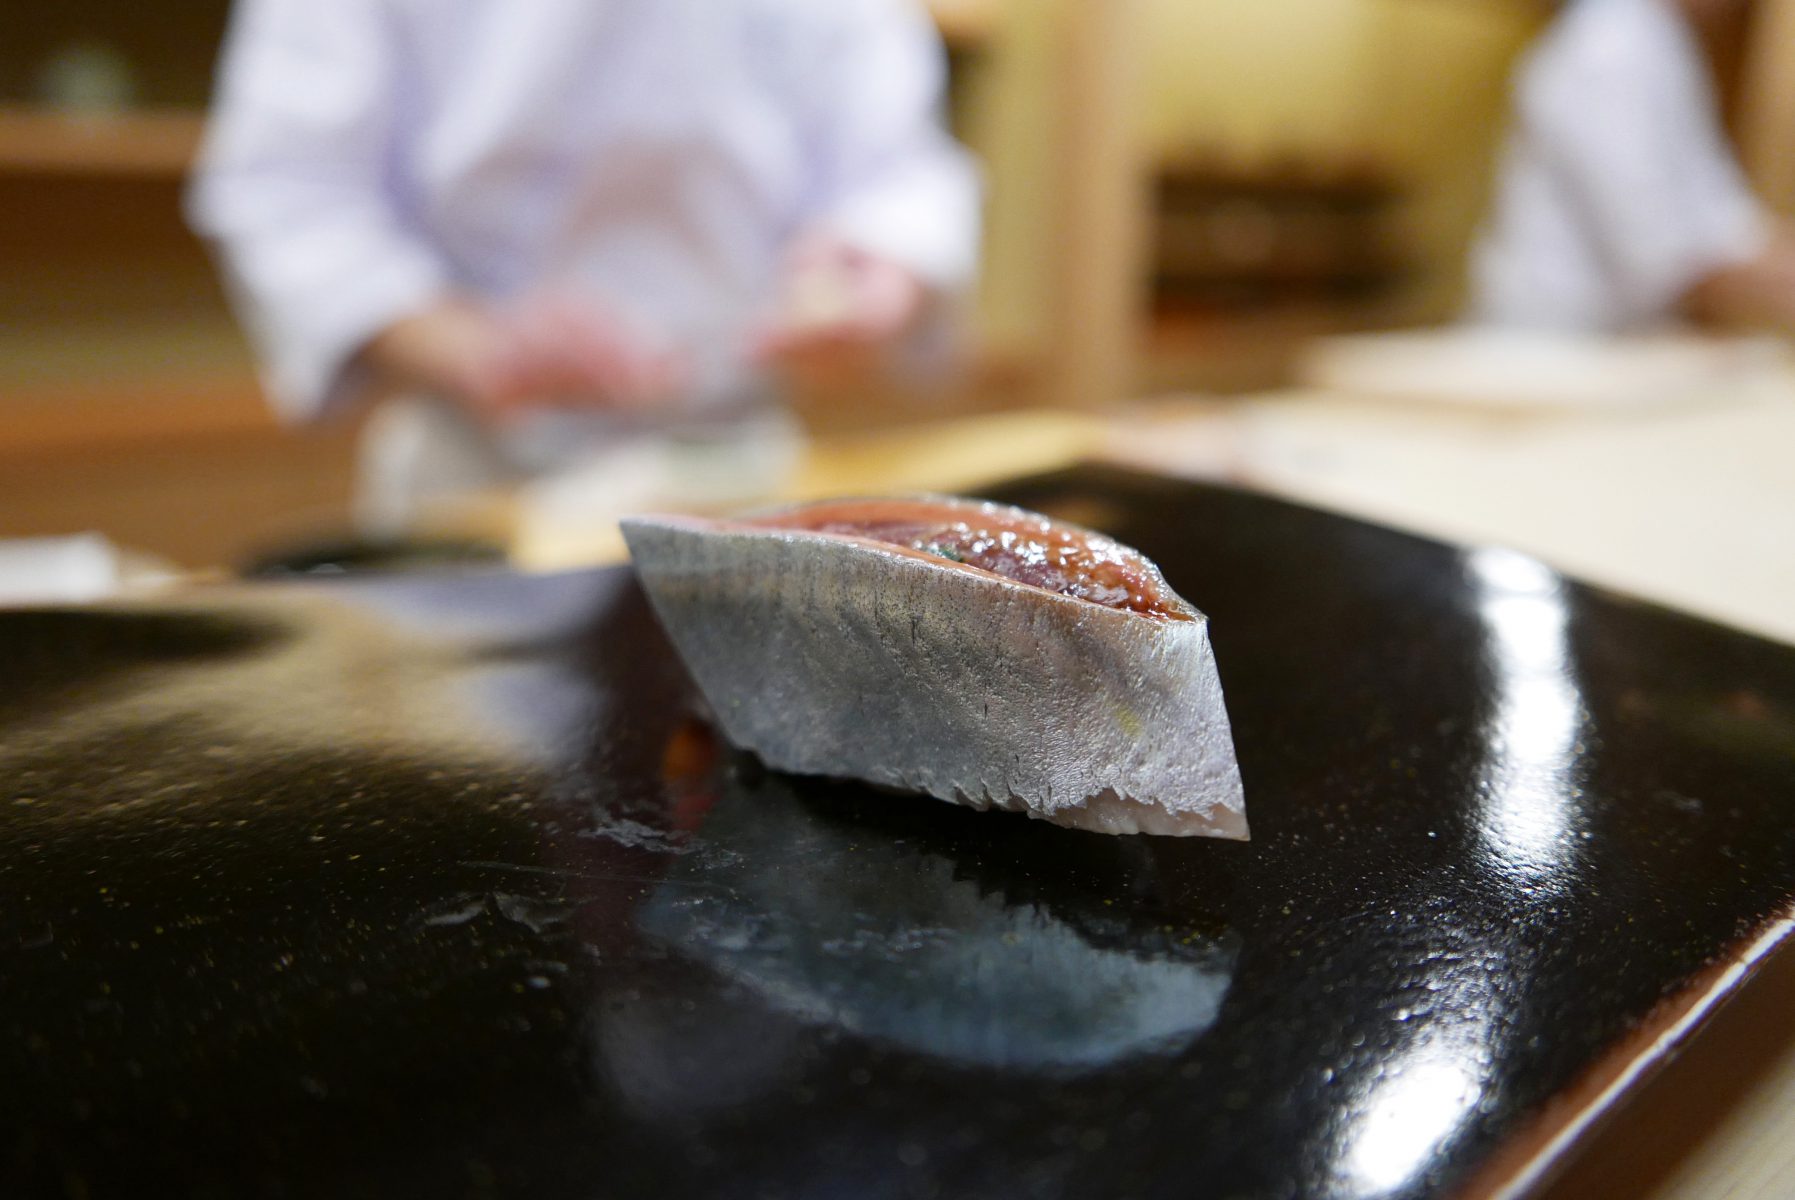 Aji sushi at Sugita